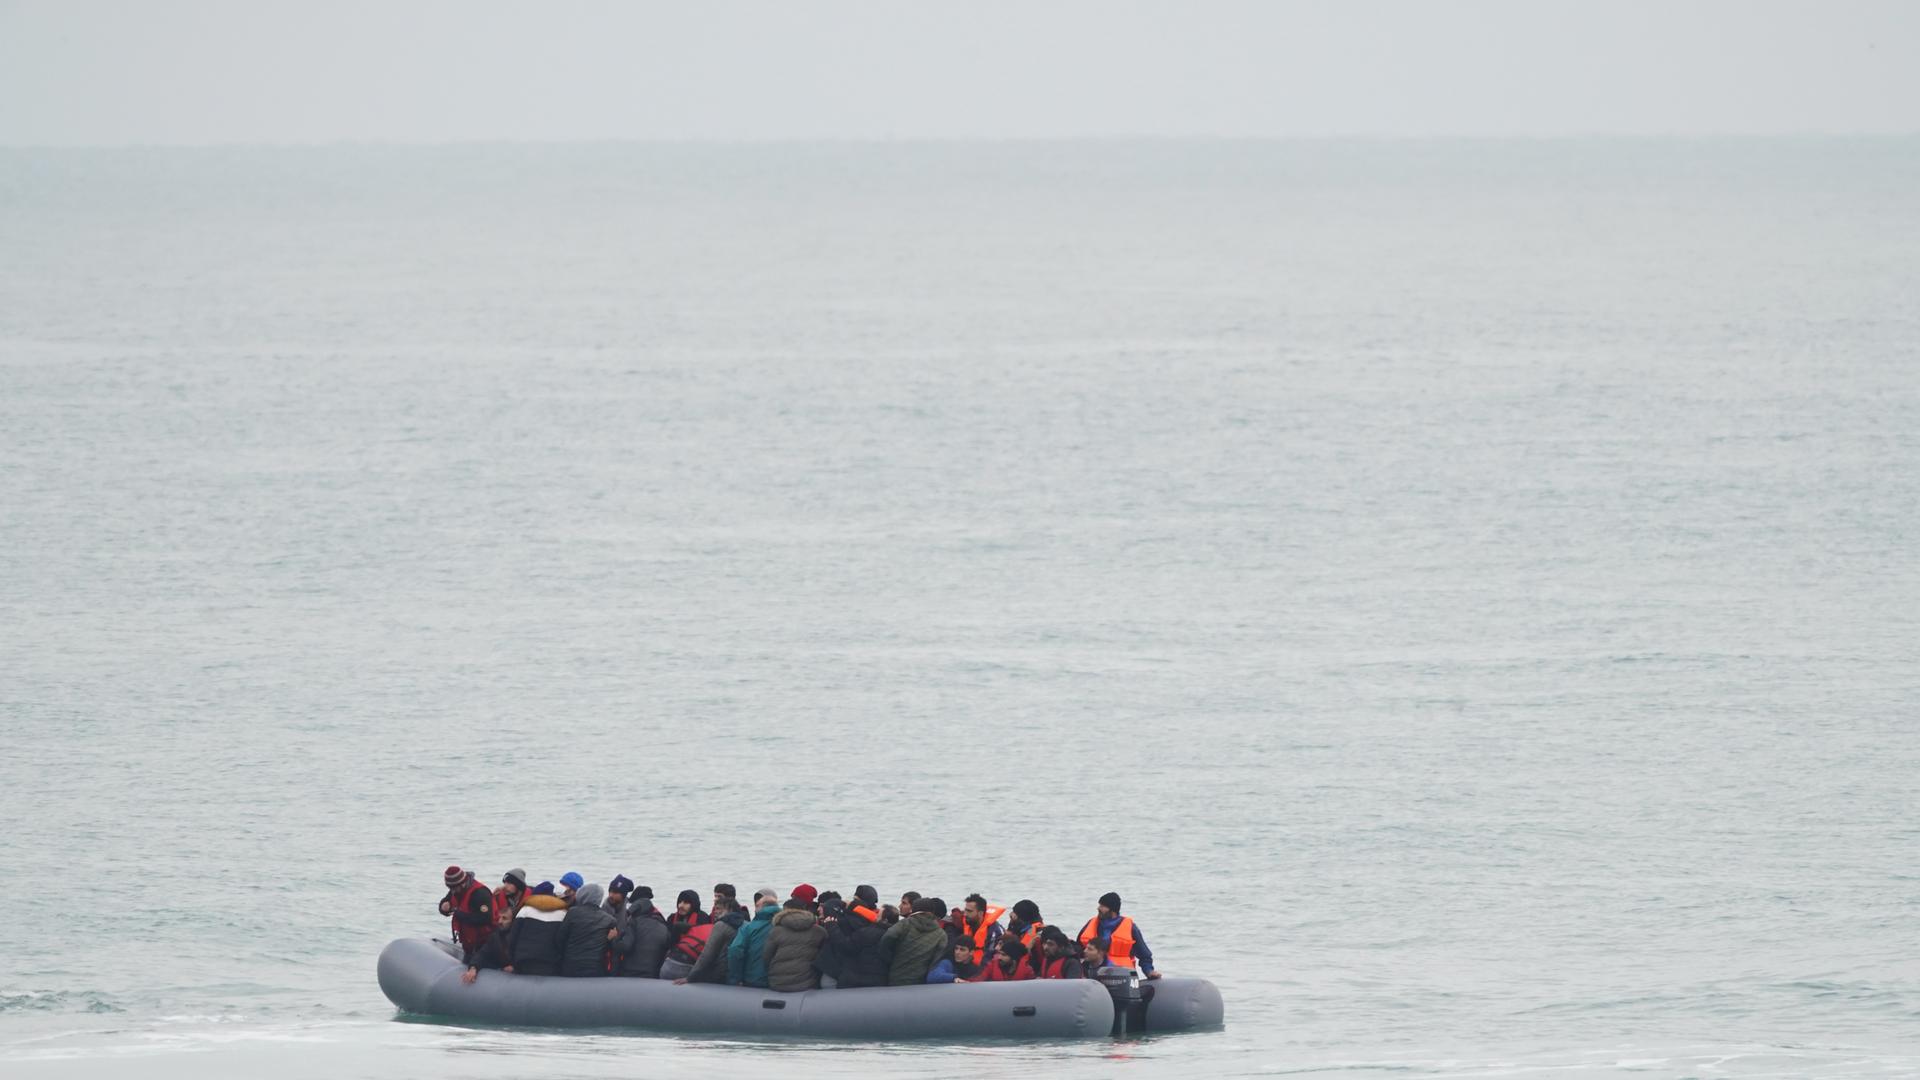 Zu sehen ist eine eine Gruppe von Menschen in einem Schlauchboot auf dem Ärmelkanal bei ruhiger See.